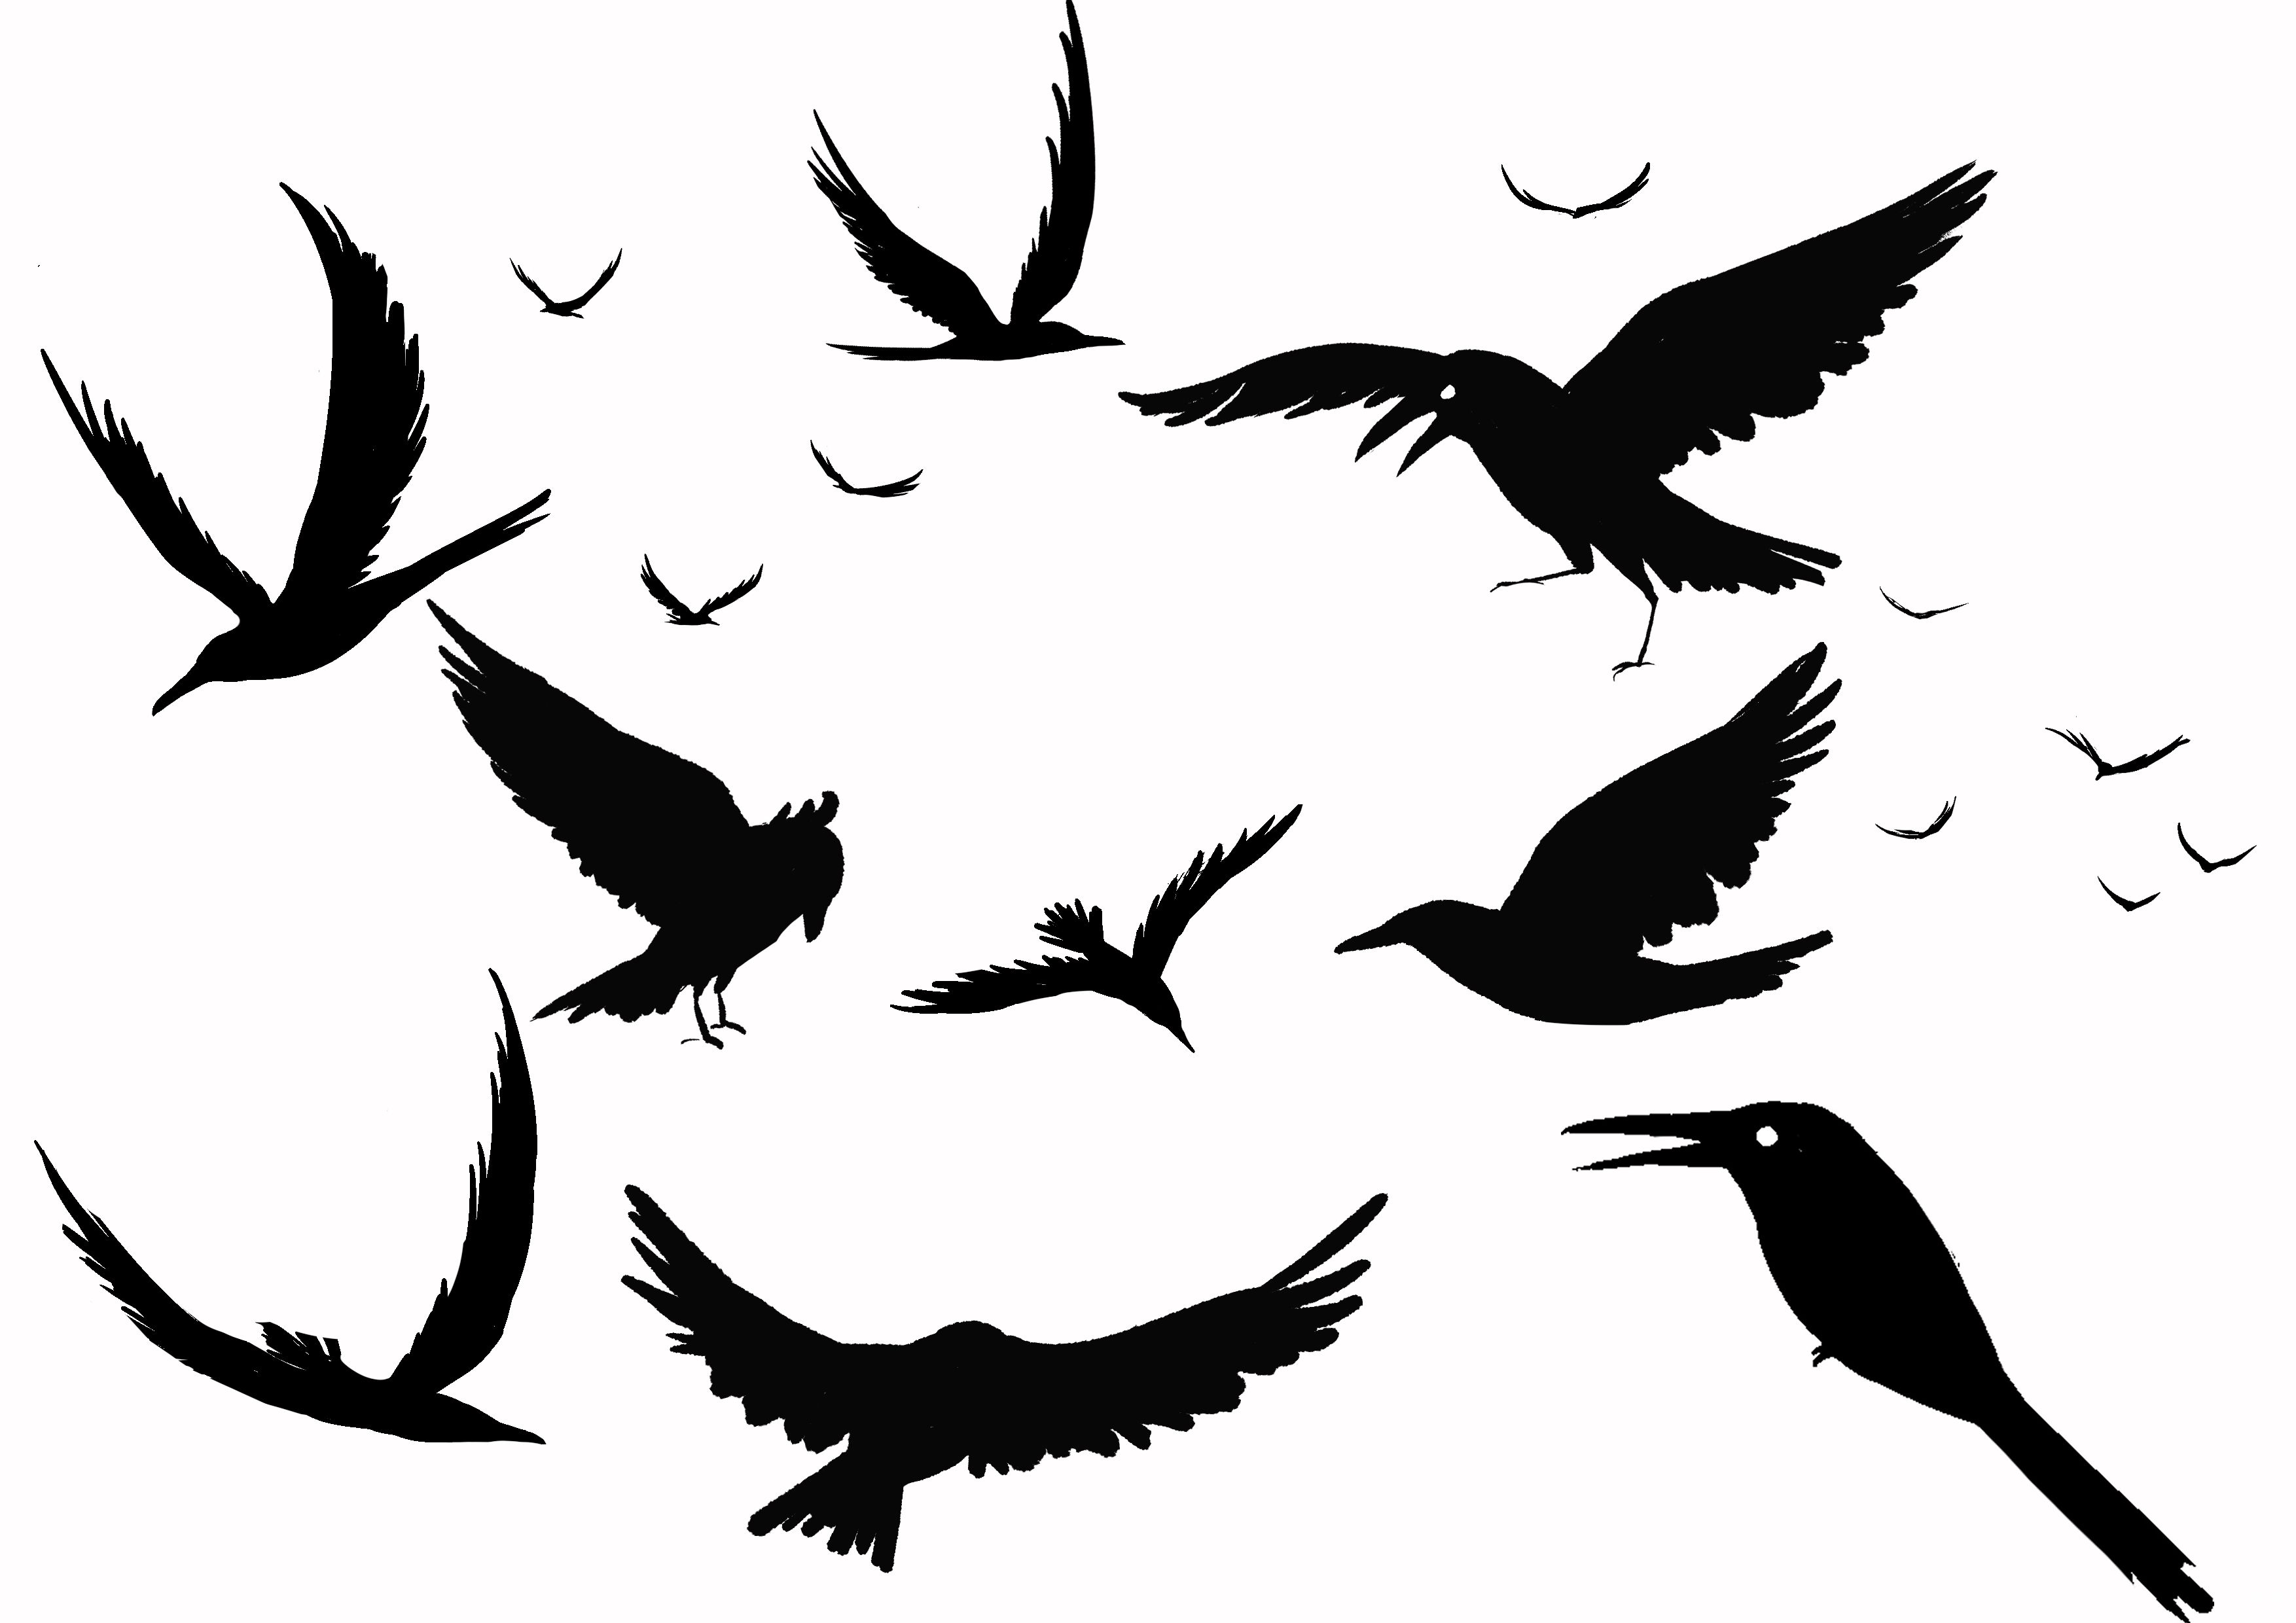 震撼的恐怖死亡乌鸦矢量插画T恤图案设计模板 - 云瑞设计